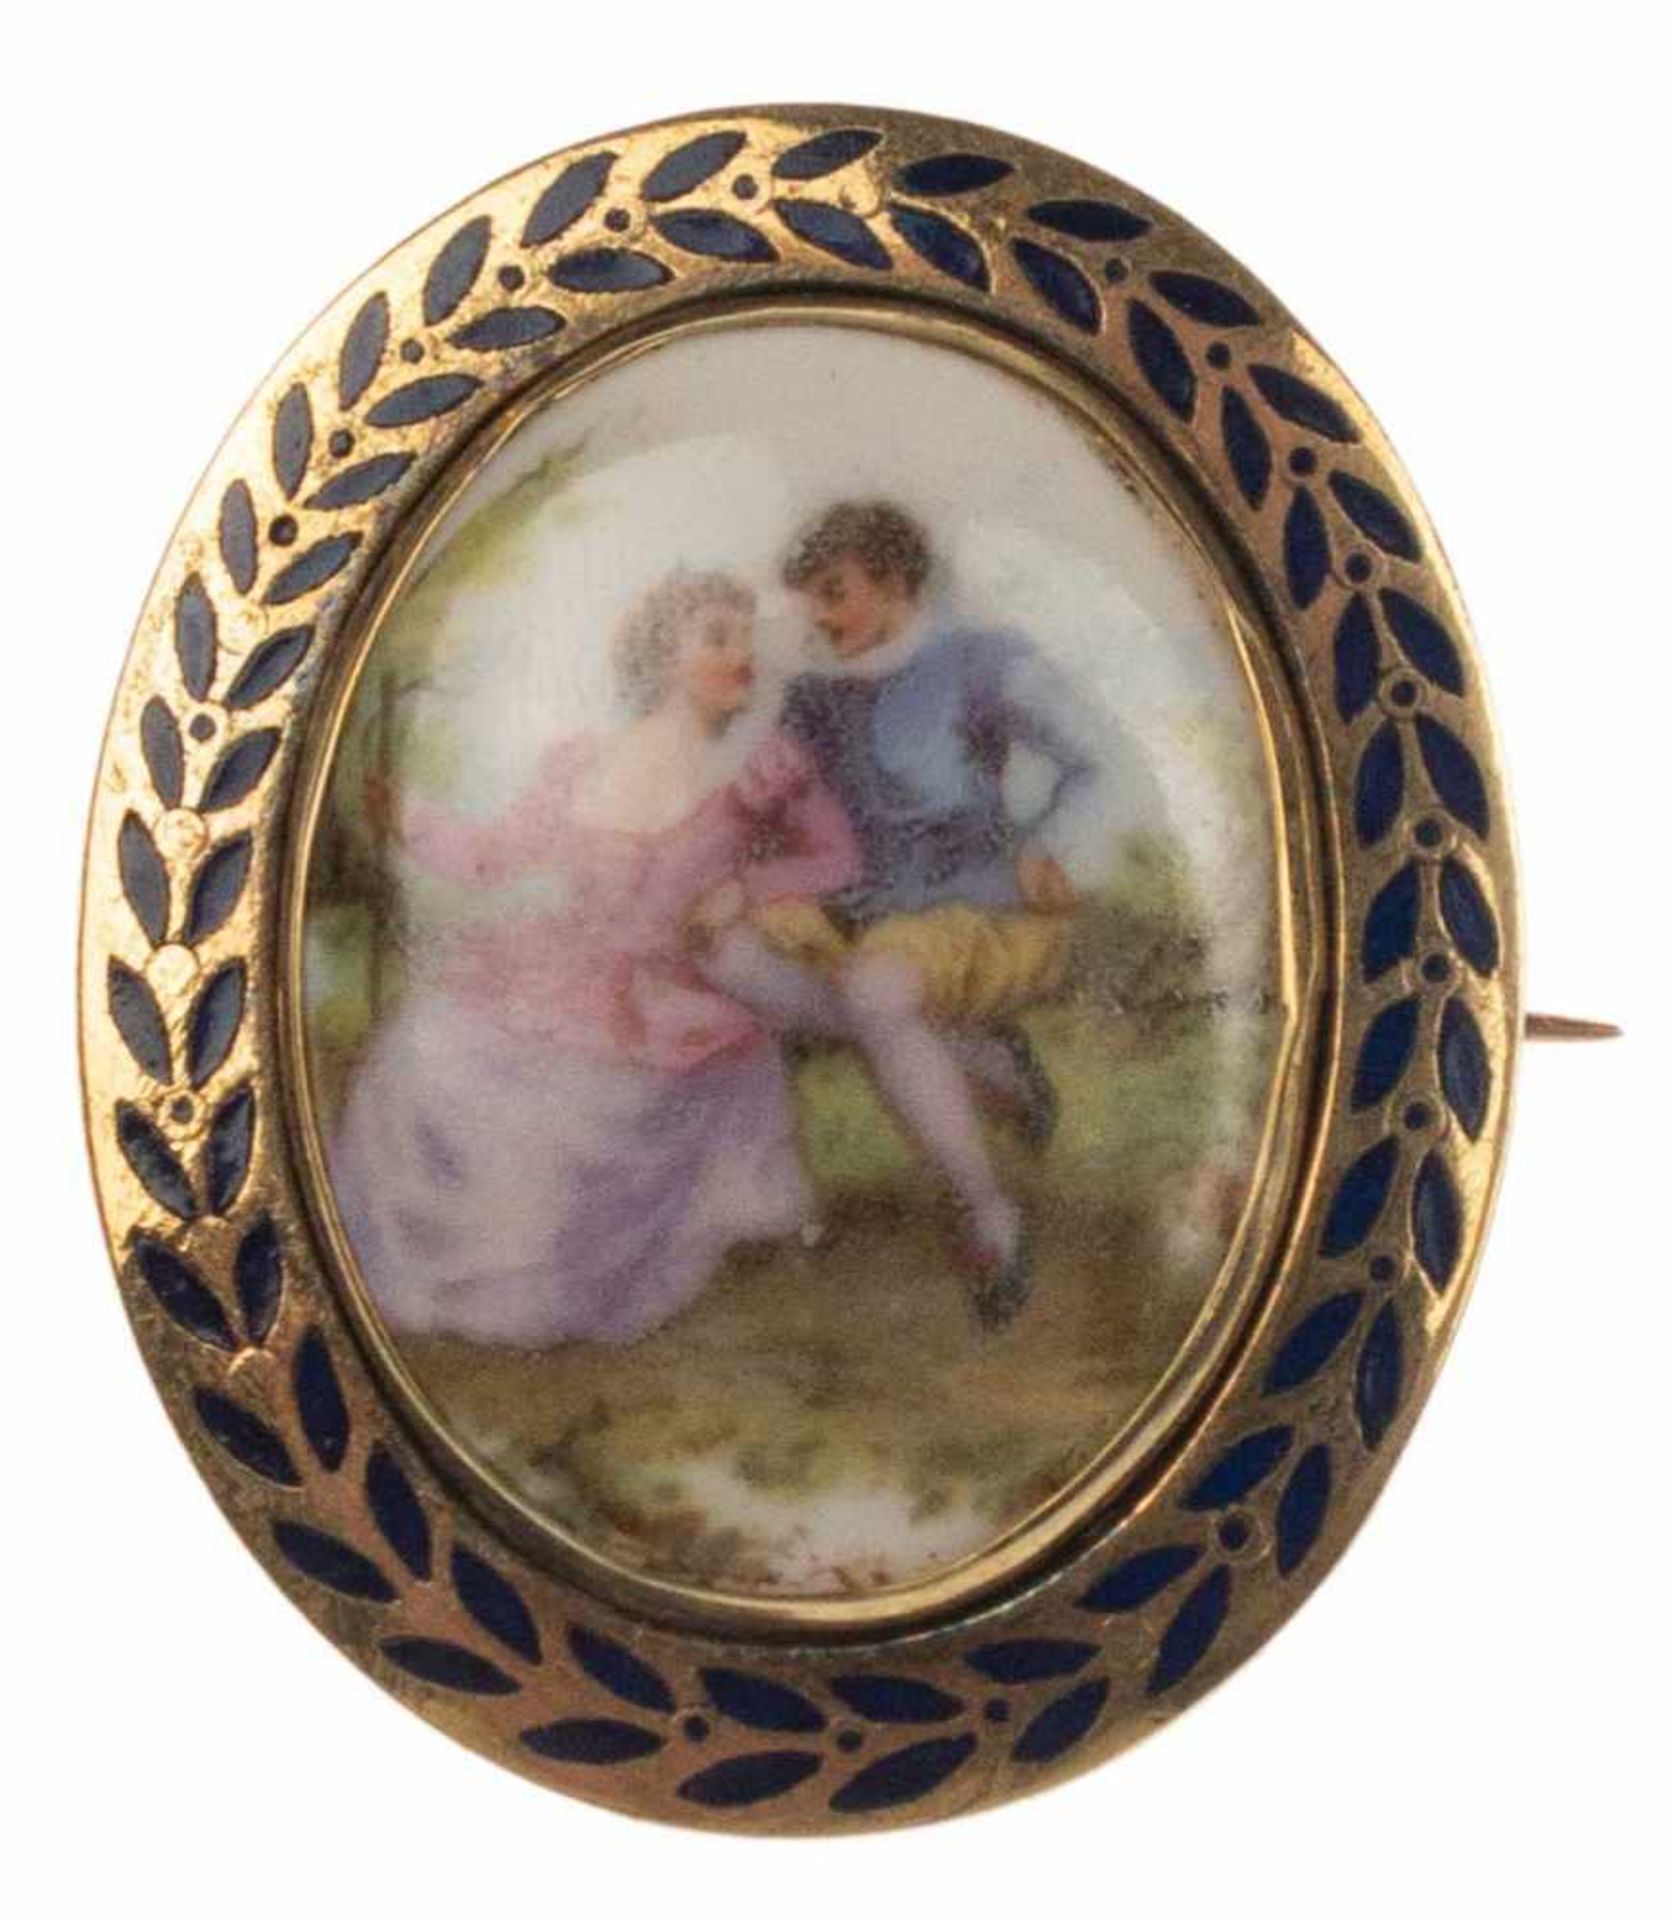 Brosche mit Watteau-Szene auf Porzellan, vergoldet, Rahmen emailliert, Maße 4,4x3,6 cm